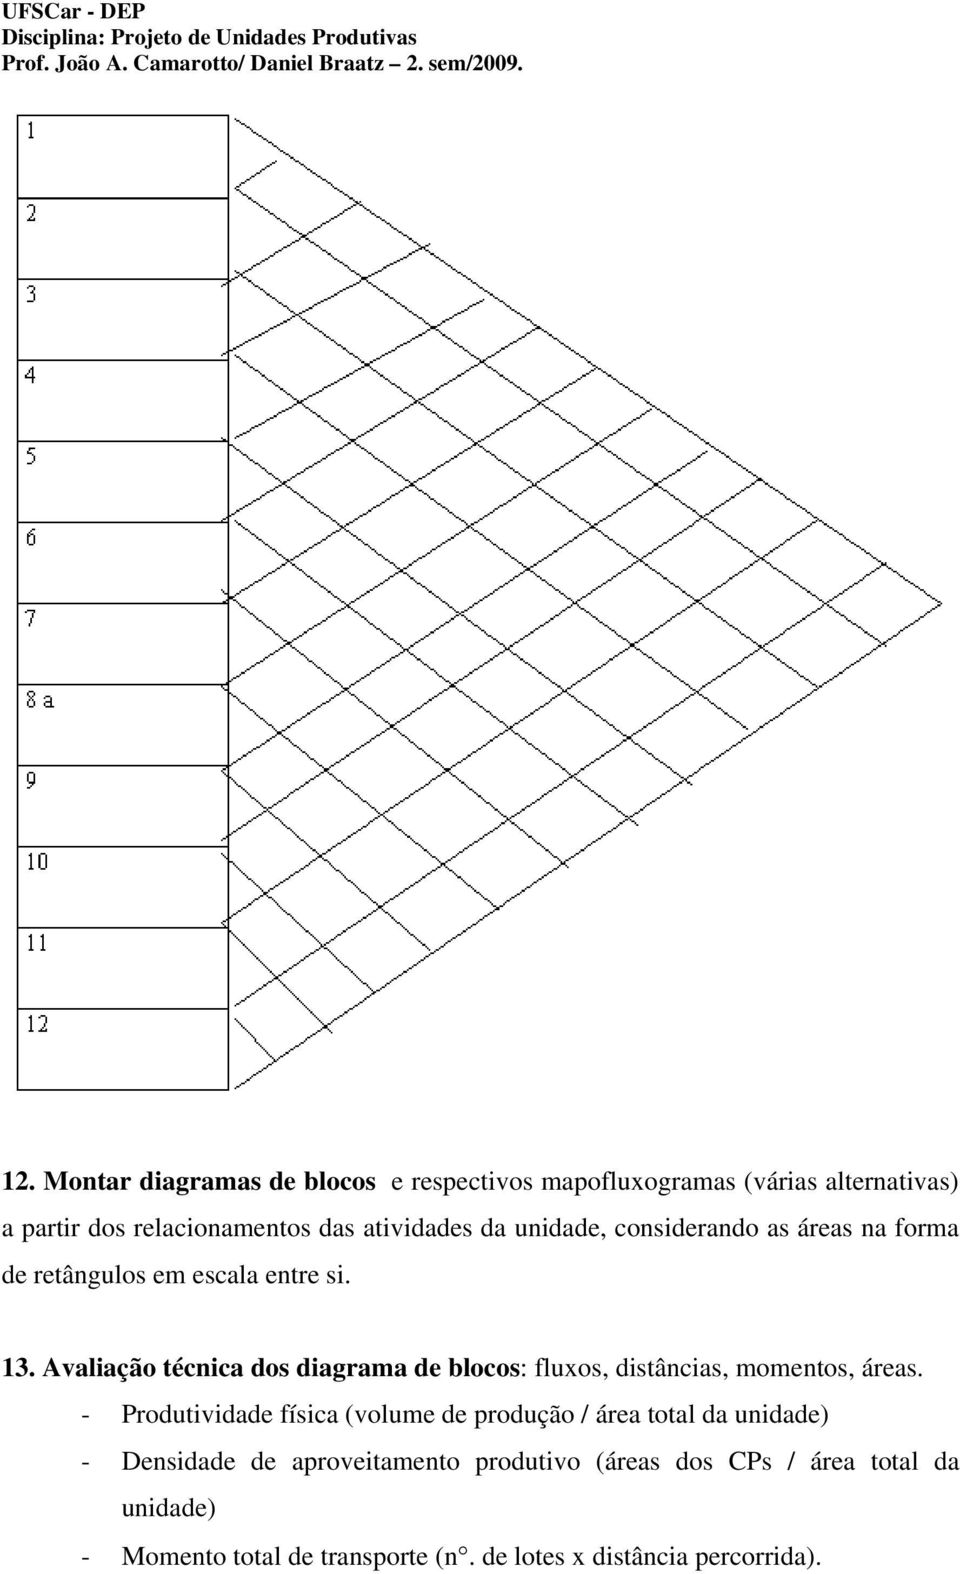 Avaliação técnica dos diagrama de blocos: fluxos, distâncias, momentos, áreas.